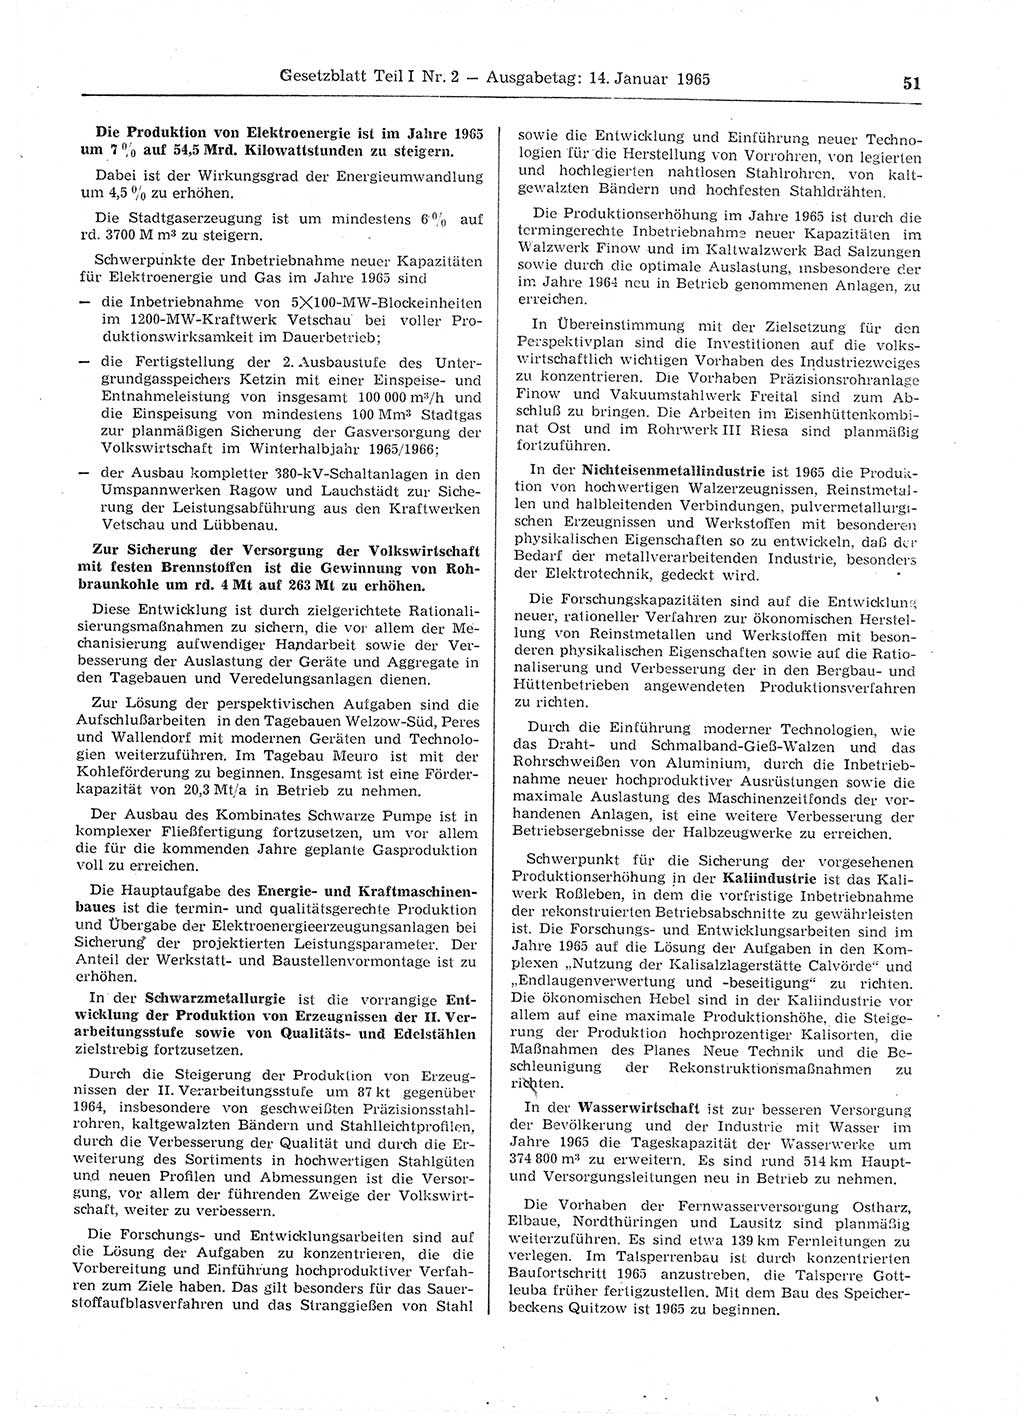 Gesetzblatt (GBl.) der Deutschen Demokratischen Republik (DDR) Teil Ⅰ 1965, Seite 51 (GBl. DDR Ⅰ 1965, S. 51)